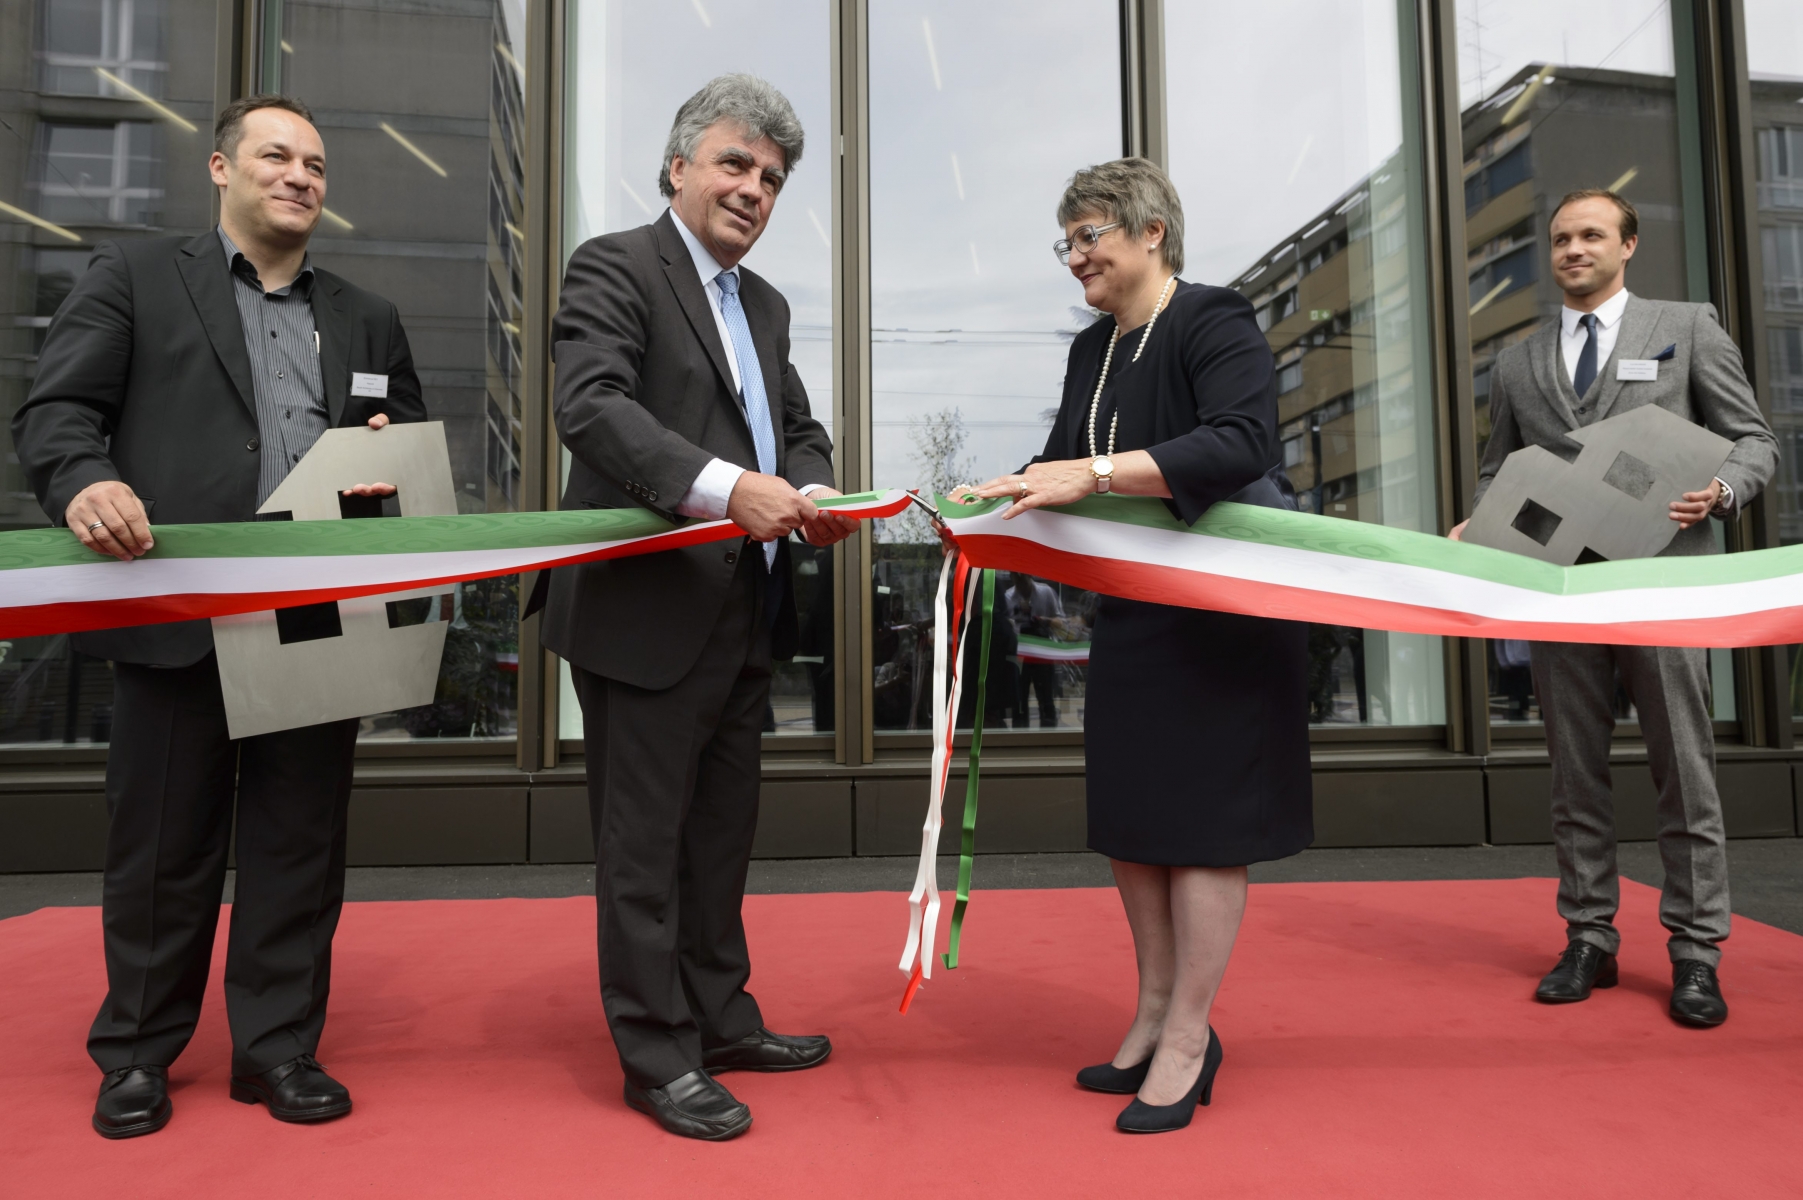 Patrick Aebischer, centre gauche, président de l' EPFL et la conseillère d'Etat neuchâteloise Monika Maire-Hefti, centre droite, coupent le ruban devant les architectes Emmanuel Rey, gauche, et Cyril Baumann, droite, lors de l'inauguration de Microcity.